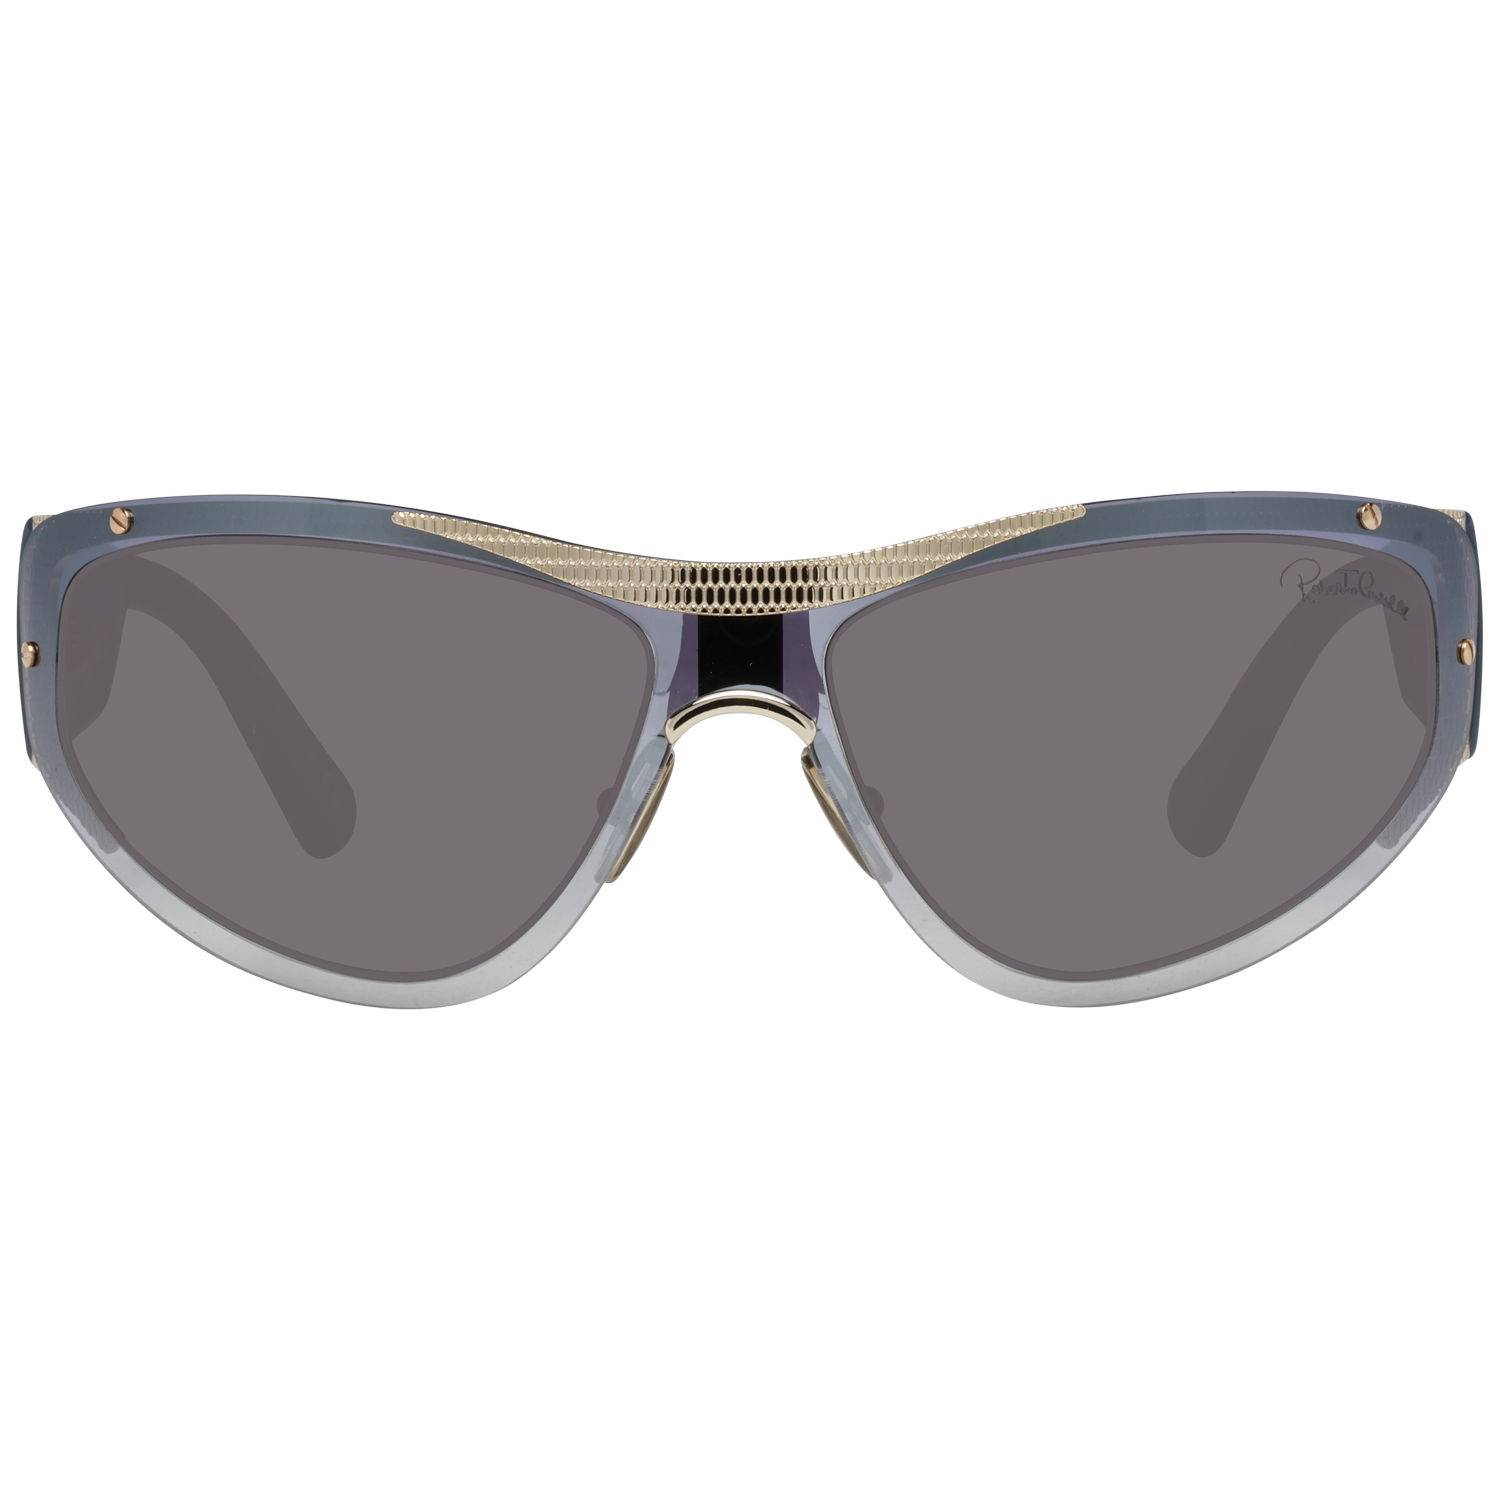 Roberto Cavalli Sunglasses Roberto Cavalli Sunglasses RC1135 32A 64 Eyeglasses Eyewear UK USA Australia 